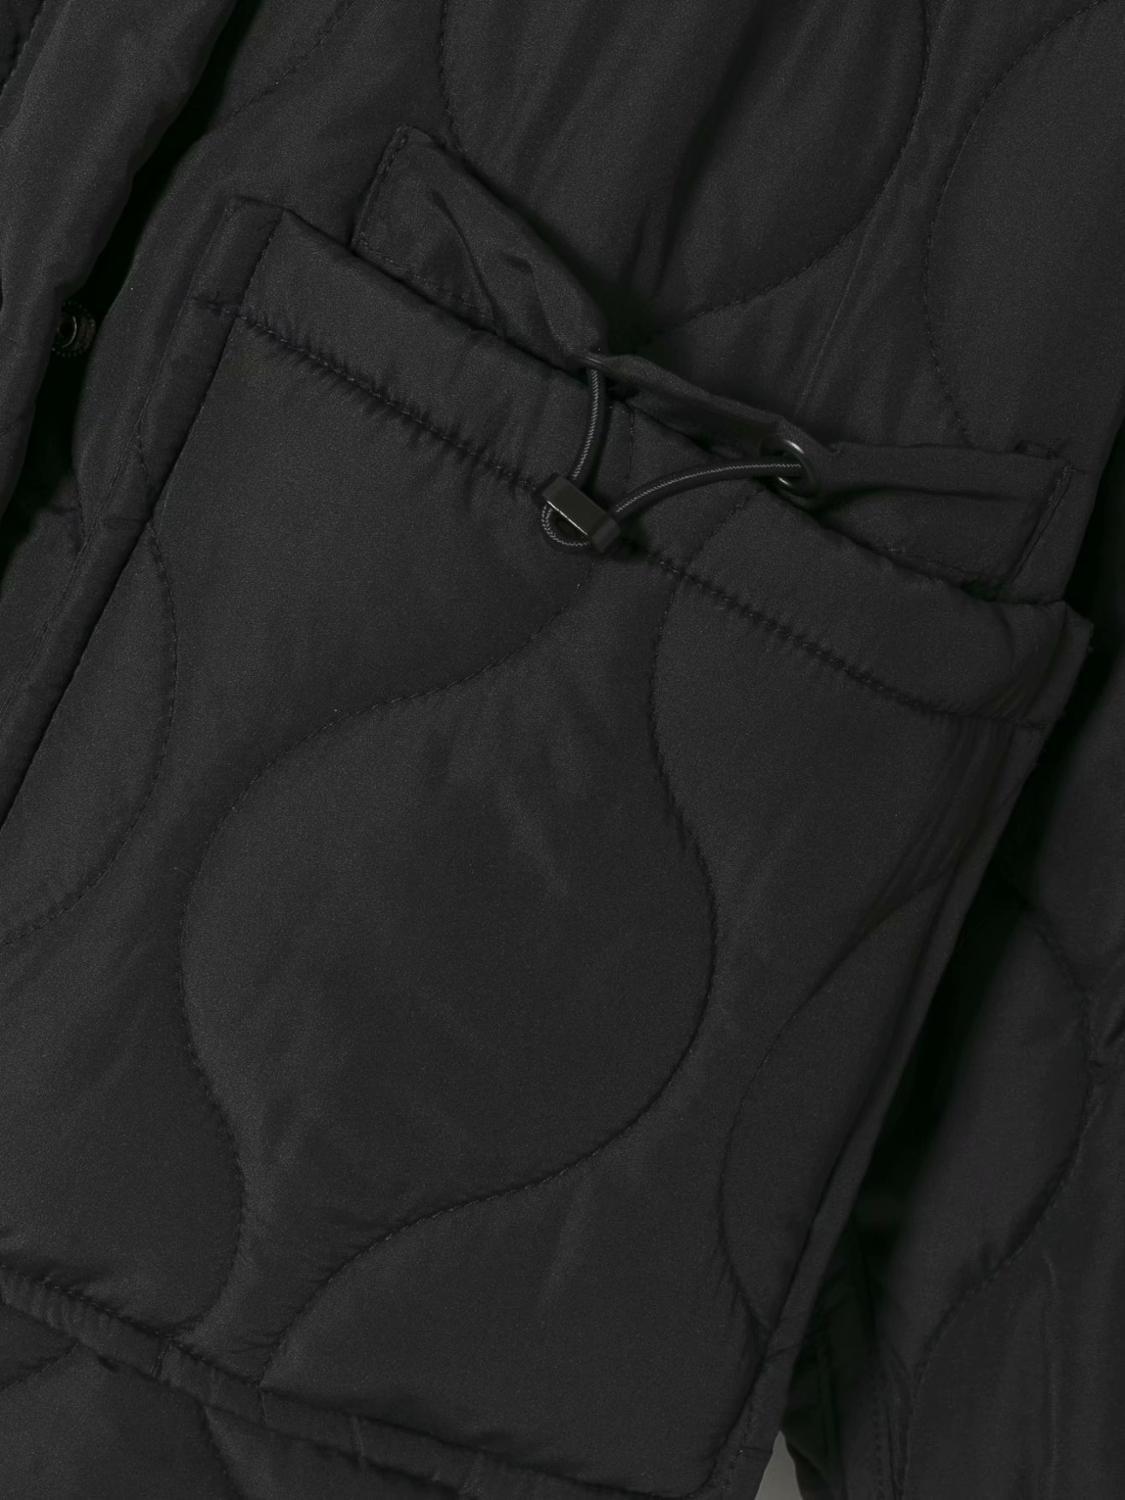 Изображение товара: Куртка женская оверсайз с капюшоном, однотонная тонкая хлопковая верхняя одежда с длинным рукавом, черная стеганая верхняя одежда, осень-зима 2020